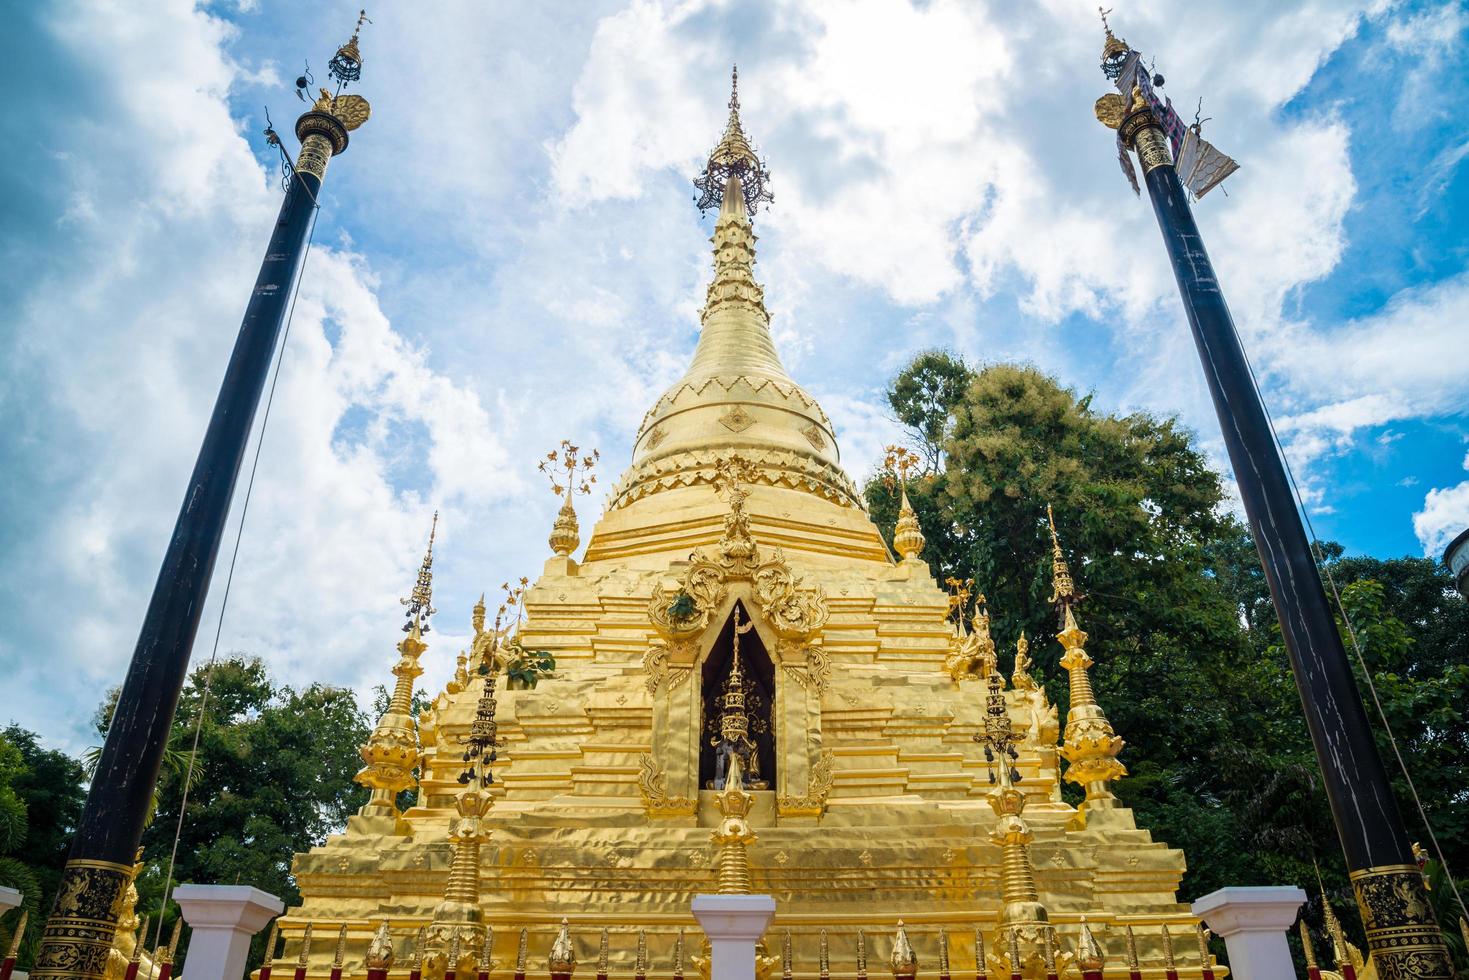 la pagoda dorata in stile birmano del tempio di wat sri mung muang a chiang mai, la capitale della regione settentrionale della thailandia. foto